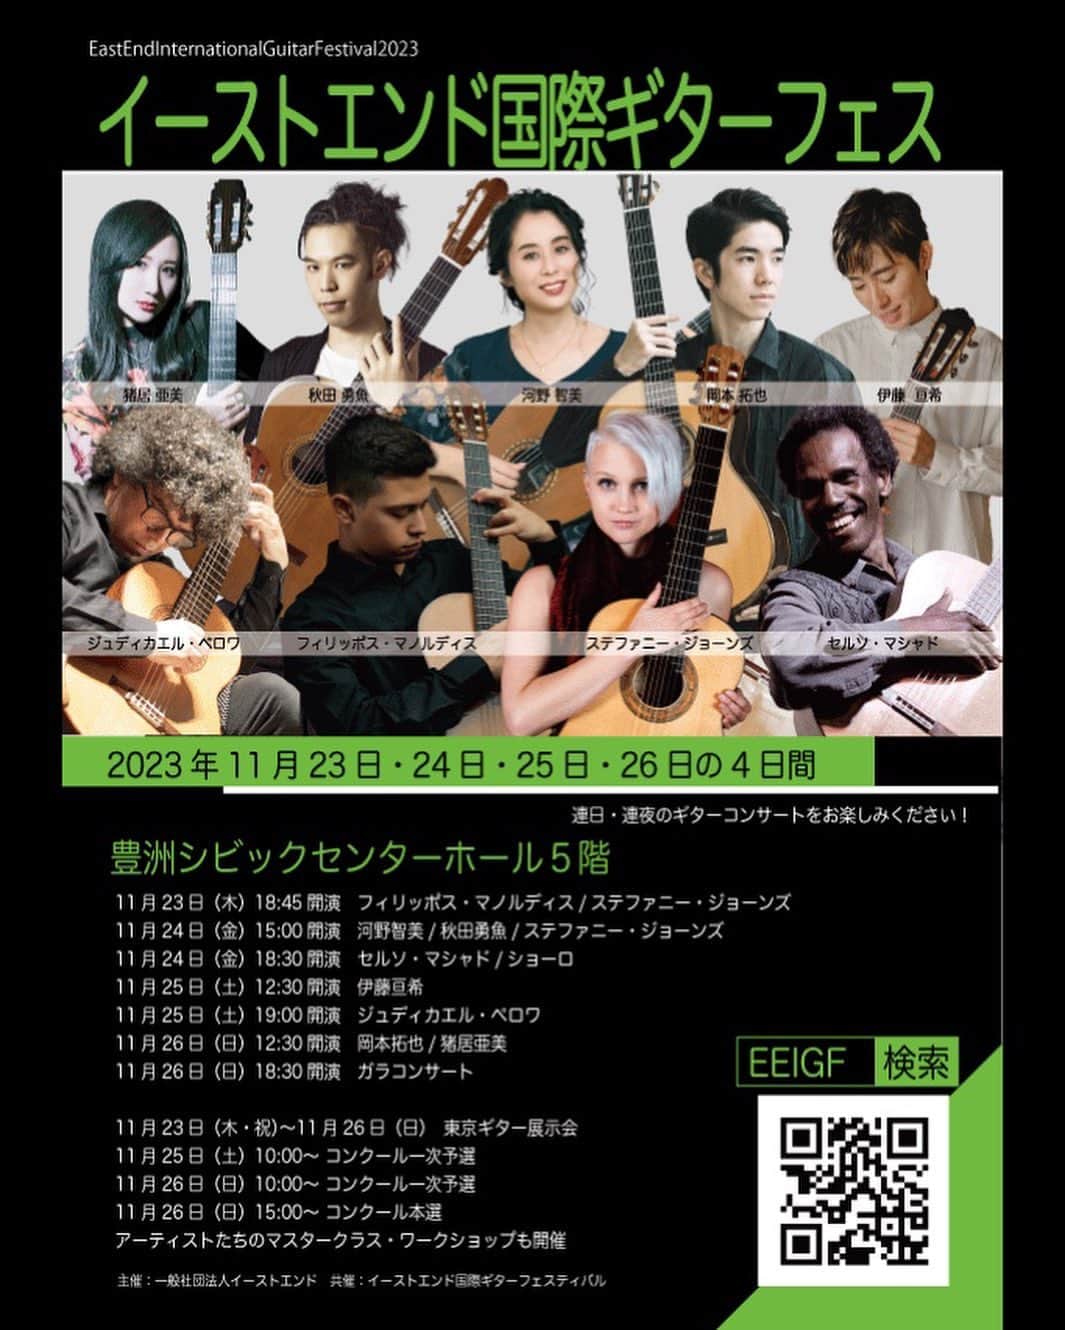 猪居亜美のインスタグラム：「東京公演のお知らせです！📢 2023年11月23日(木・祝)〜26日(日)、豊洲シビックセンターホールにて開催されるイーストエンド国際ギター・フェスティバルに出演します！  私は26日(日)12:30開演の試奏コンサートと、18:15開演のガラコンサートで演奏します。  世界の名手が勢揃いするイベントですので、是非是非皆さまご来場ください😊」